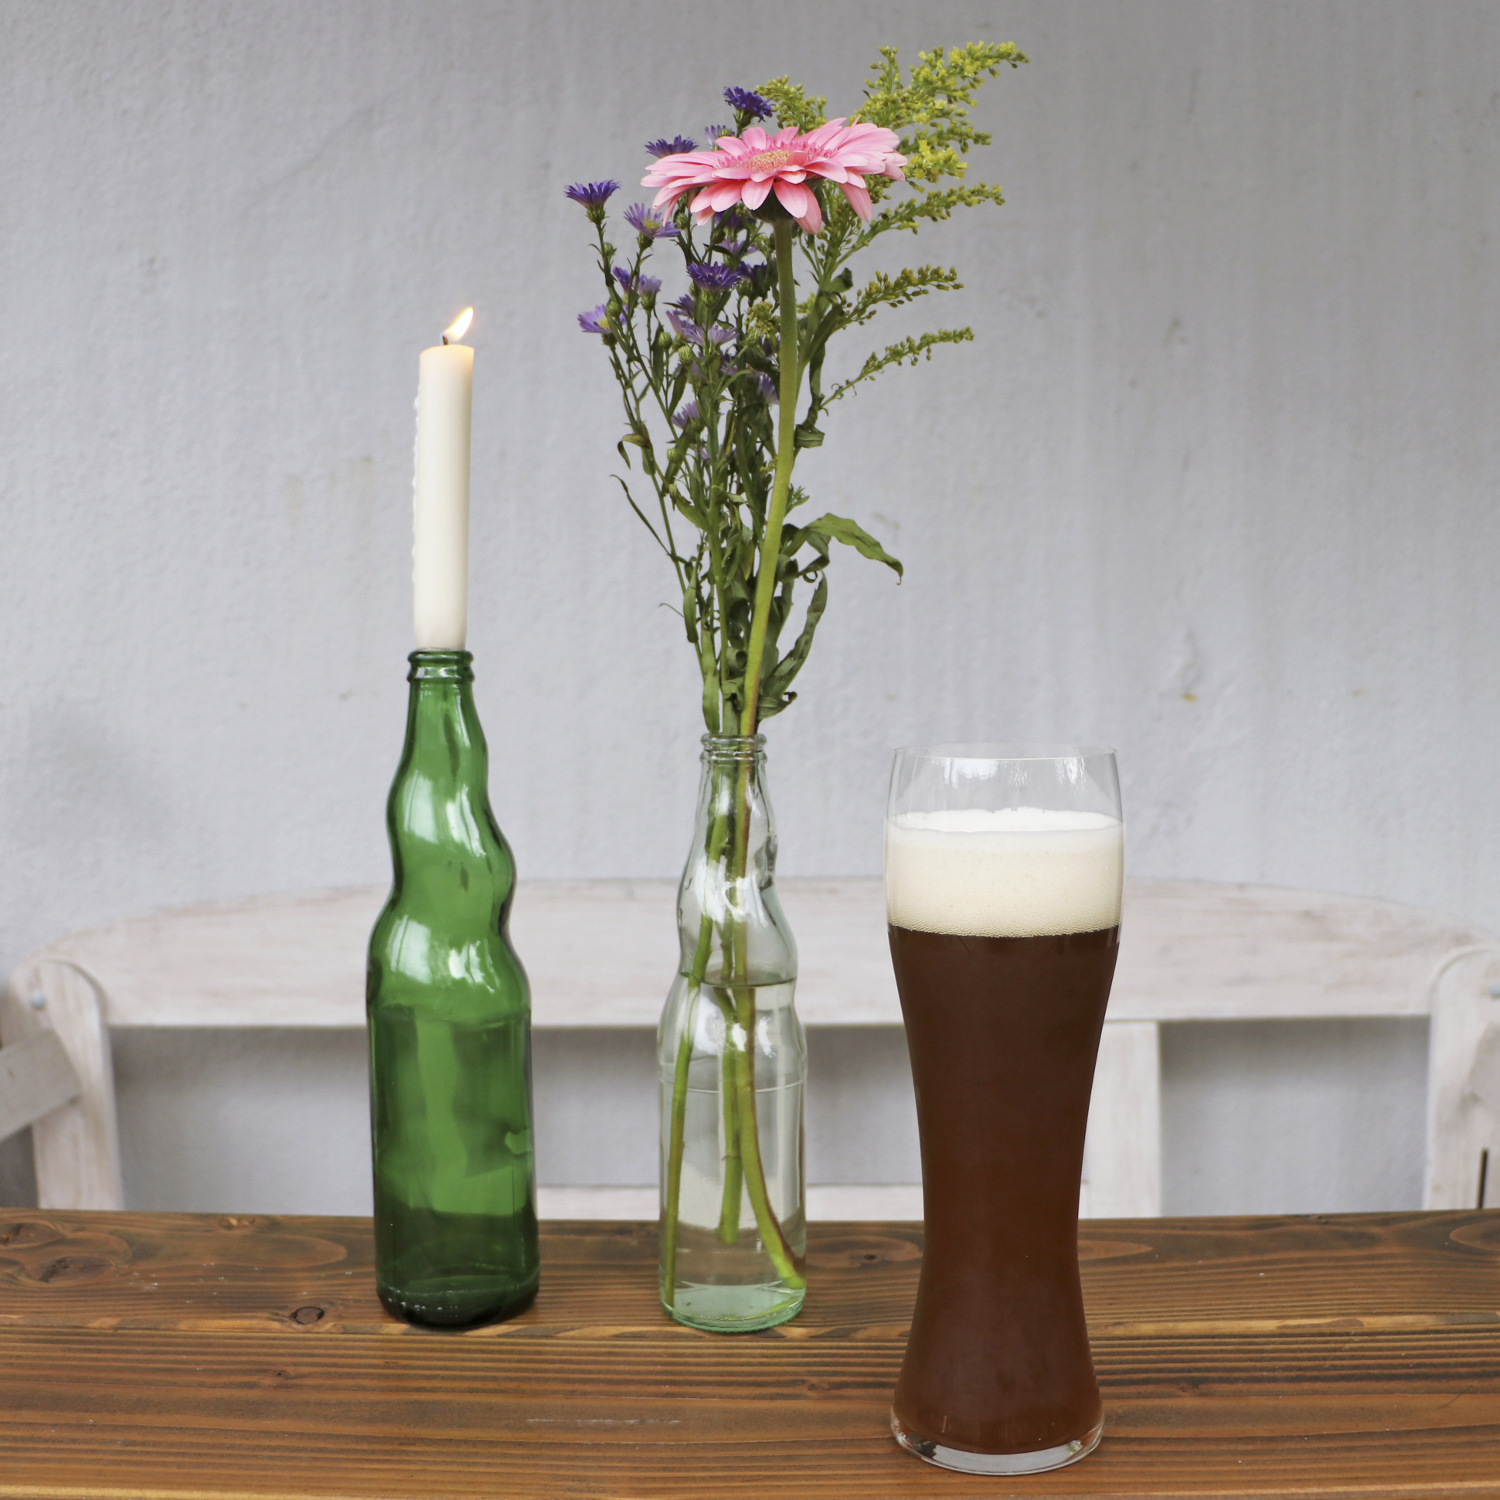 Weizenbiere Von Welde Leckeres Bier In Stylishem Design